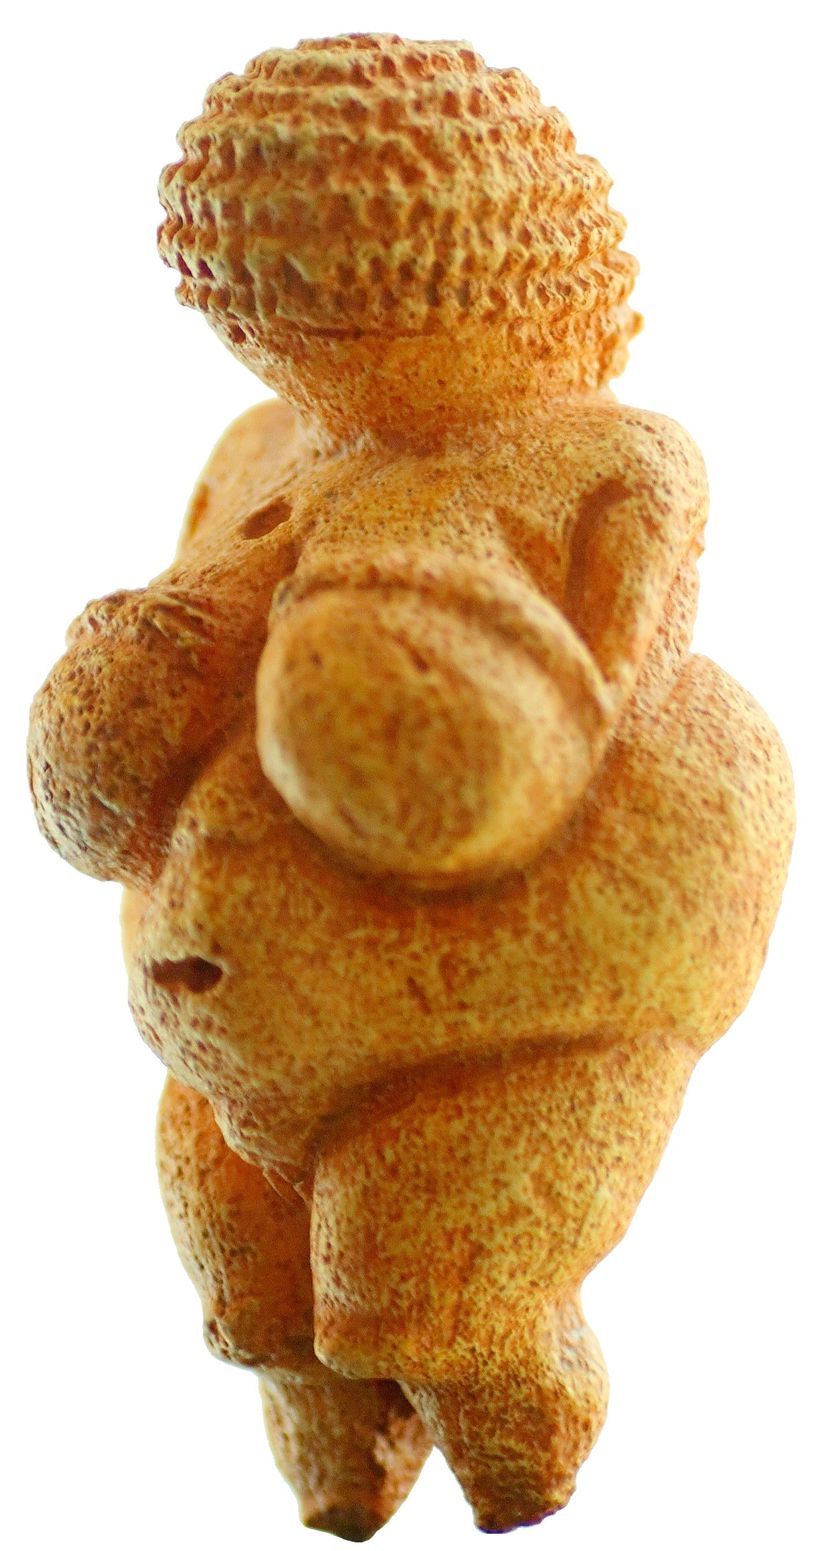 Willendorf Venüsü Avusturya'nın, Eski Taş Çağı'na ait en ünlü kalıntısıdır. Heykel MÖ 25.000 yıllarında yapılmıştır. 7 Ağustos 1908 tarihinde Wachau'da Willendorf'ta yapılan demiryolu inşaatı sırasında keşfedilmiştir. Verimliliği temsil ettiğine inanılmaktadır.